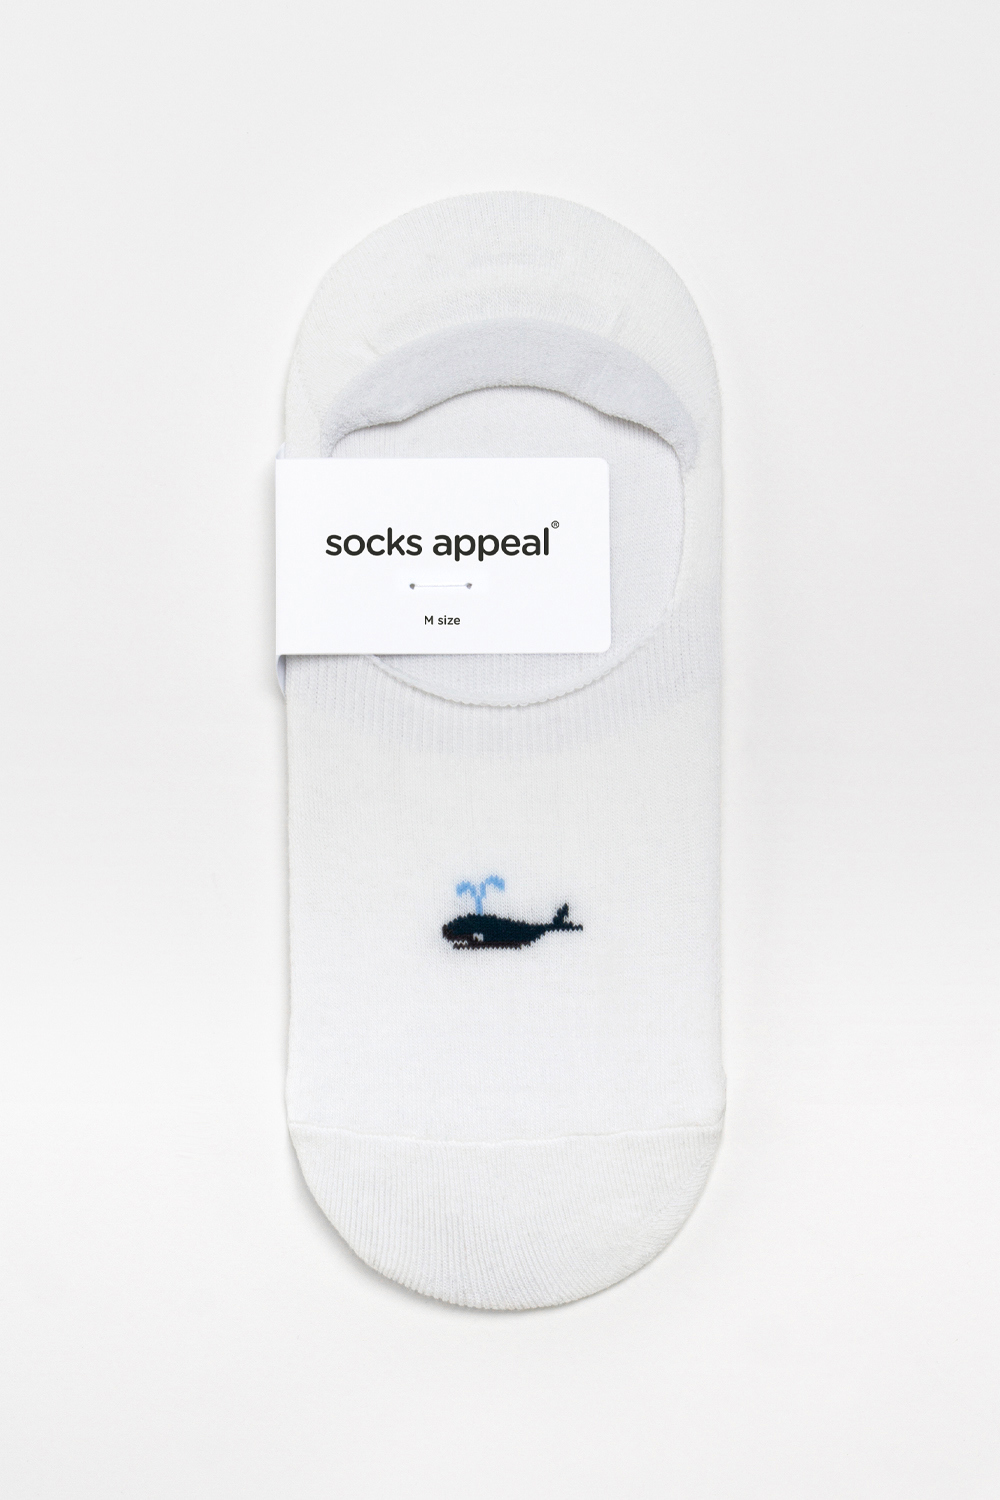 socks white color image-S3L1